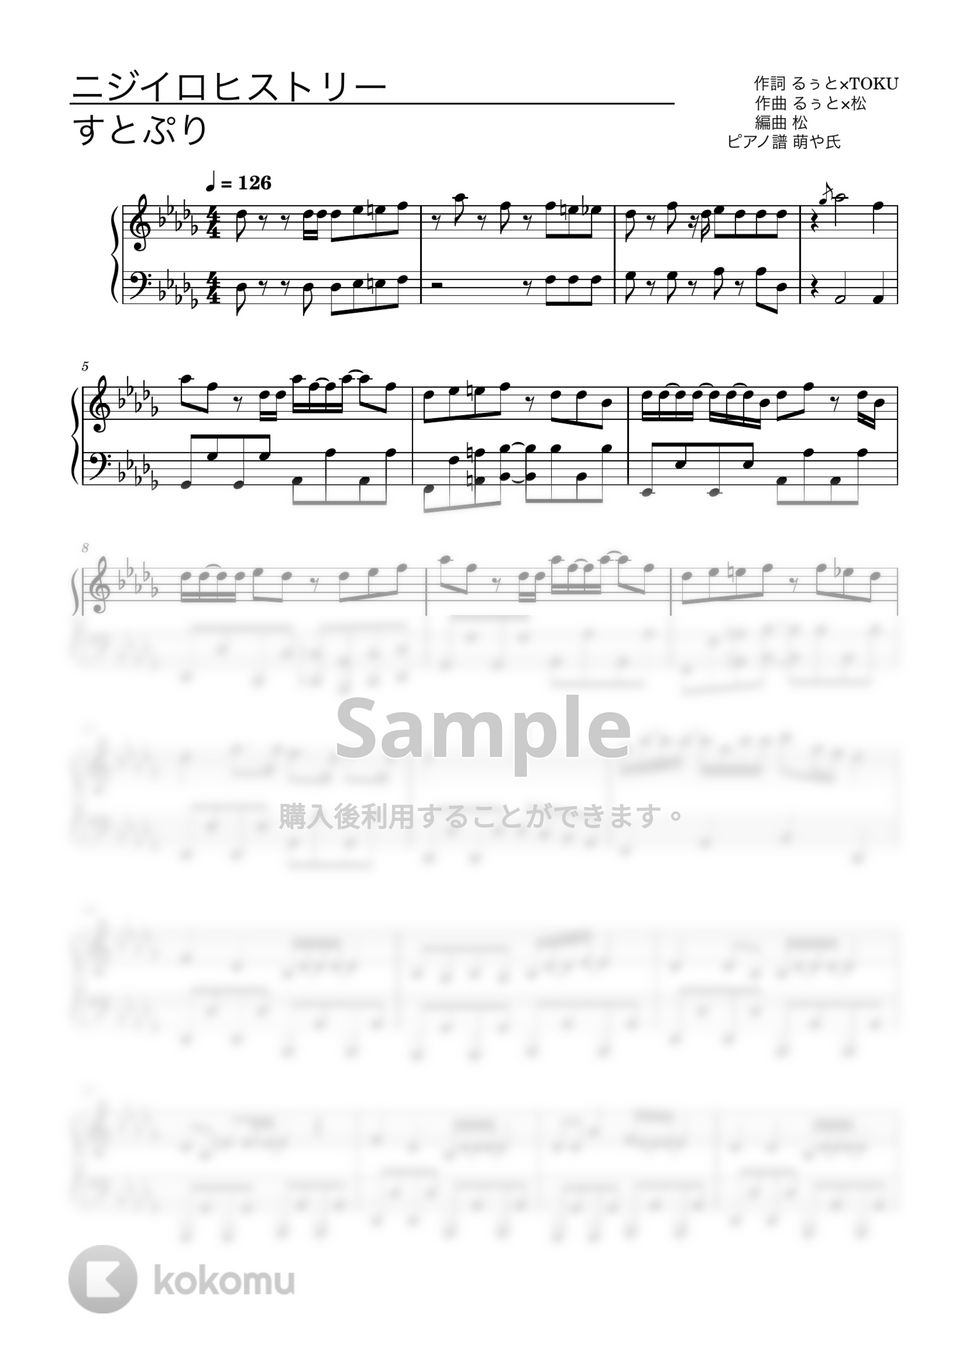 すとぷり - ニジイロヒストリー (ピアノソロ譜) by 萌や氏